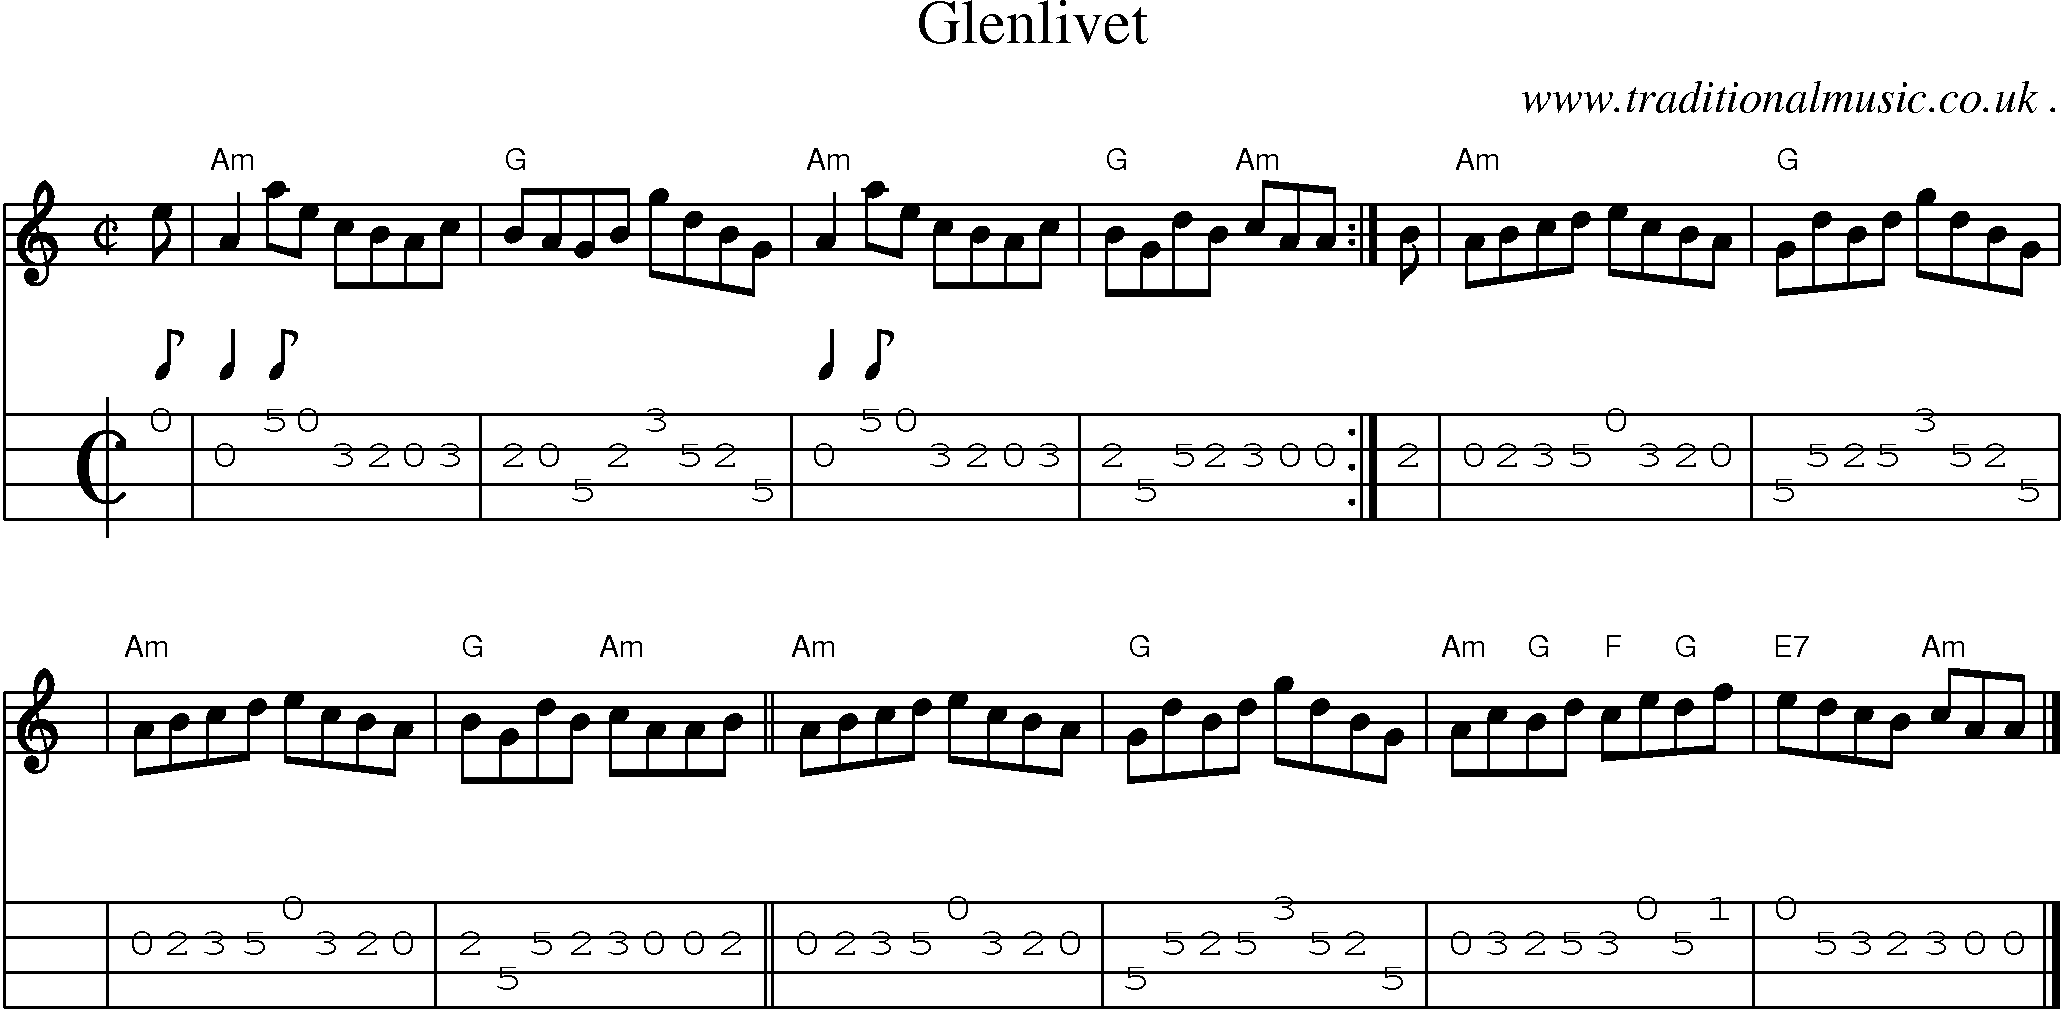 Sheet-music  score, Chords and Mandolin Tabs for Glenlivet